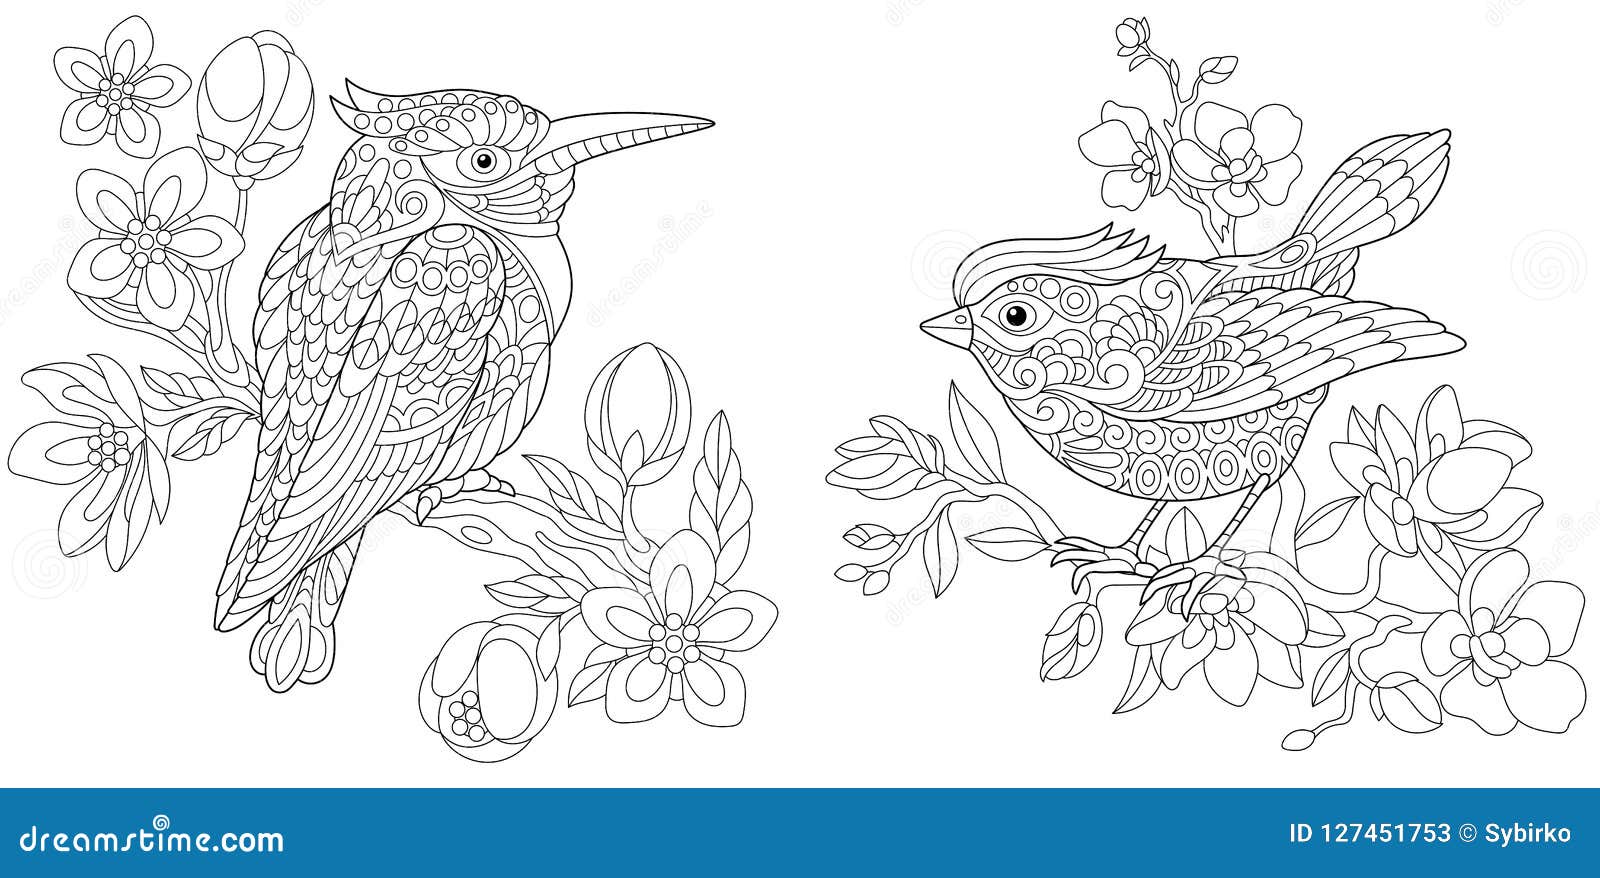 Singing Bird Coloring Stock Illustrations – 21 Singing Bird ...